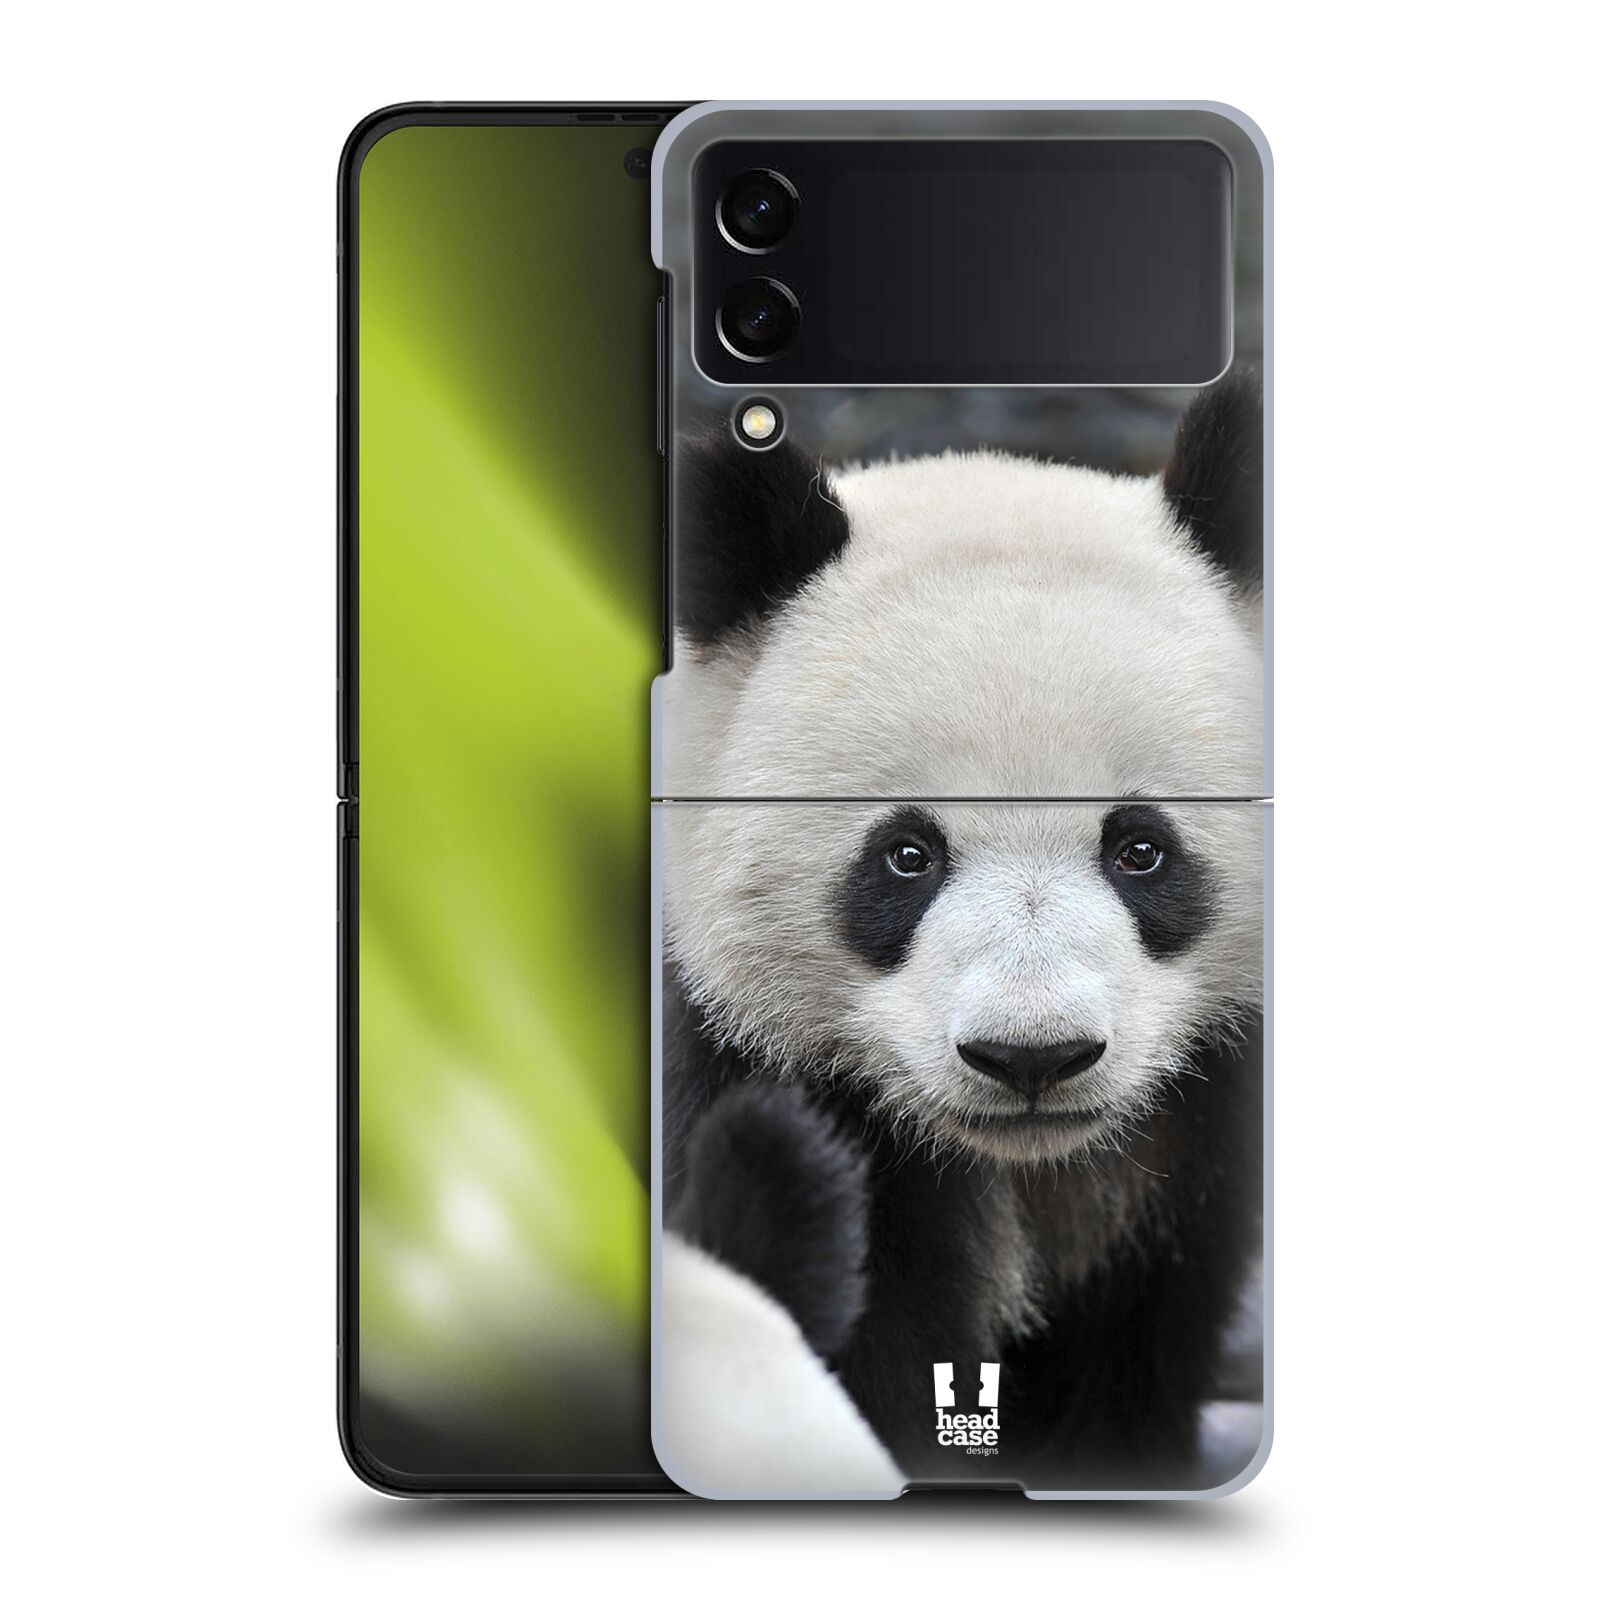 Zadní obal pro mobil Samsung Z Flip 3 5G - HEAD CASE - Svět zvířat medvěd panda